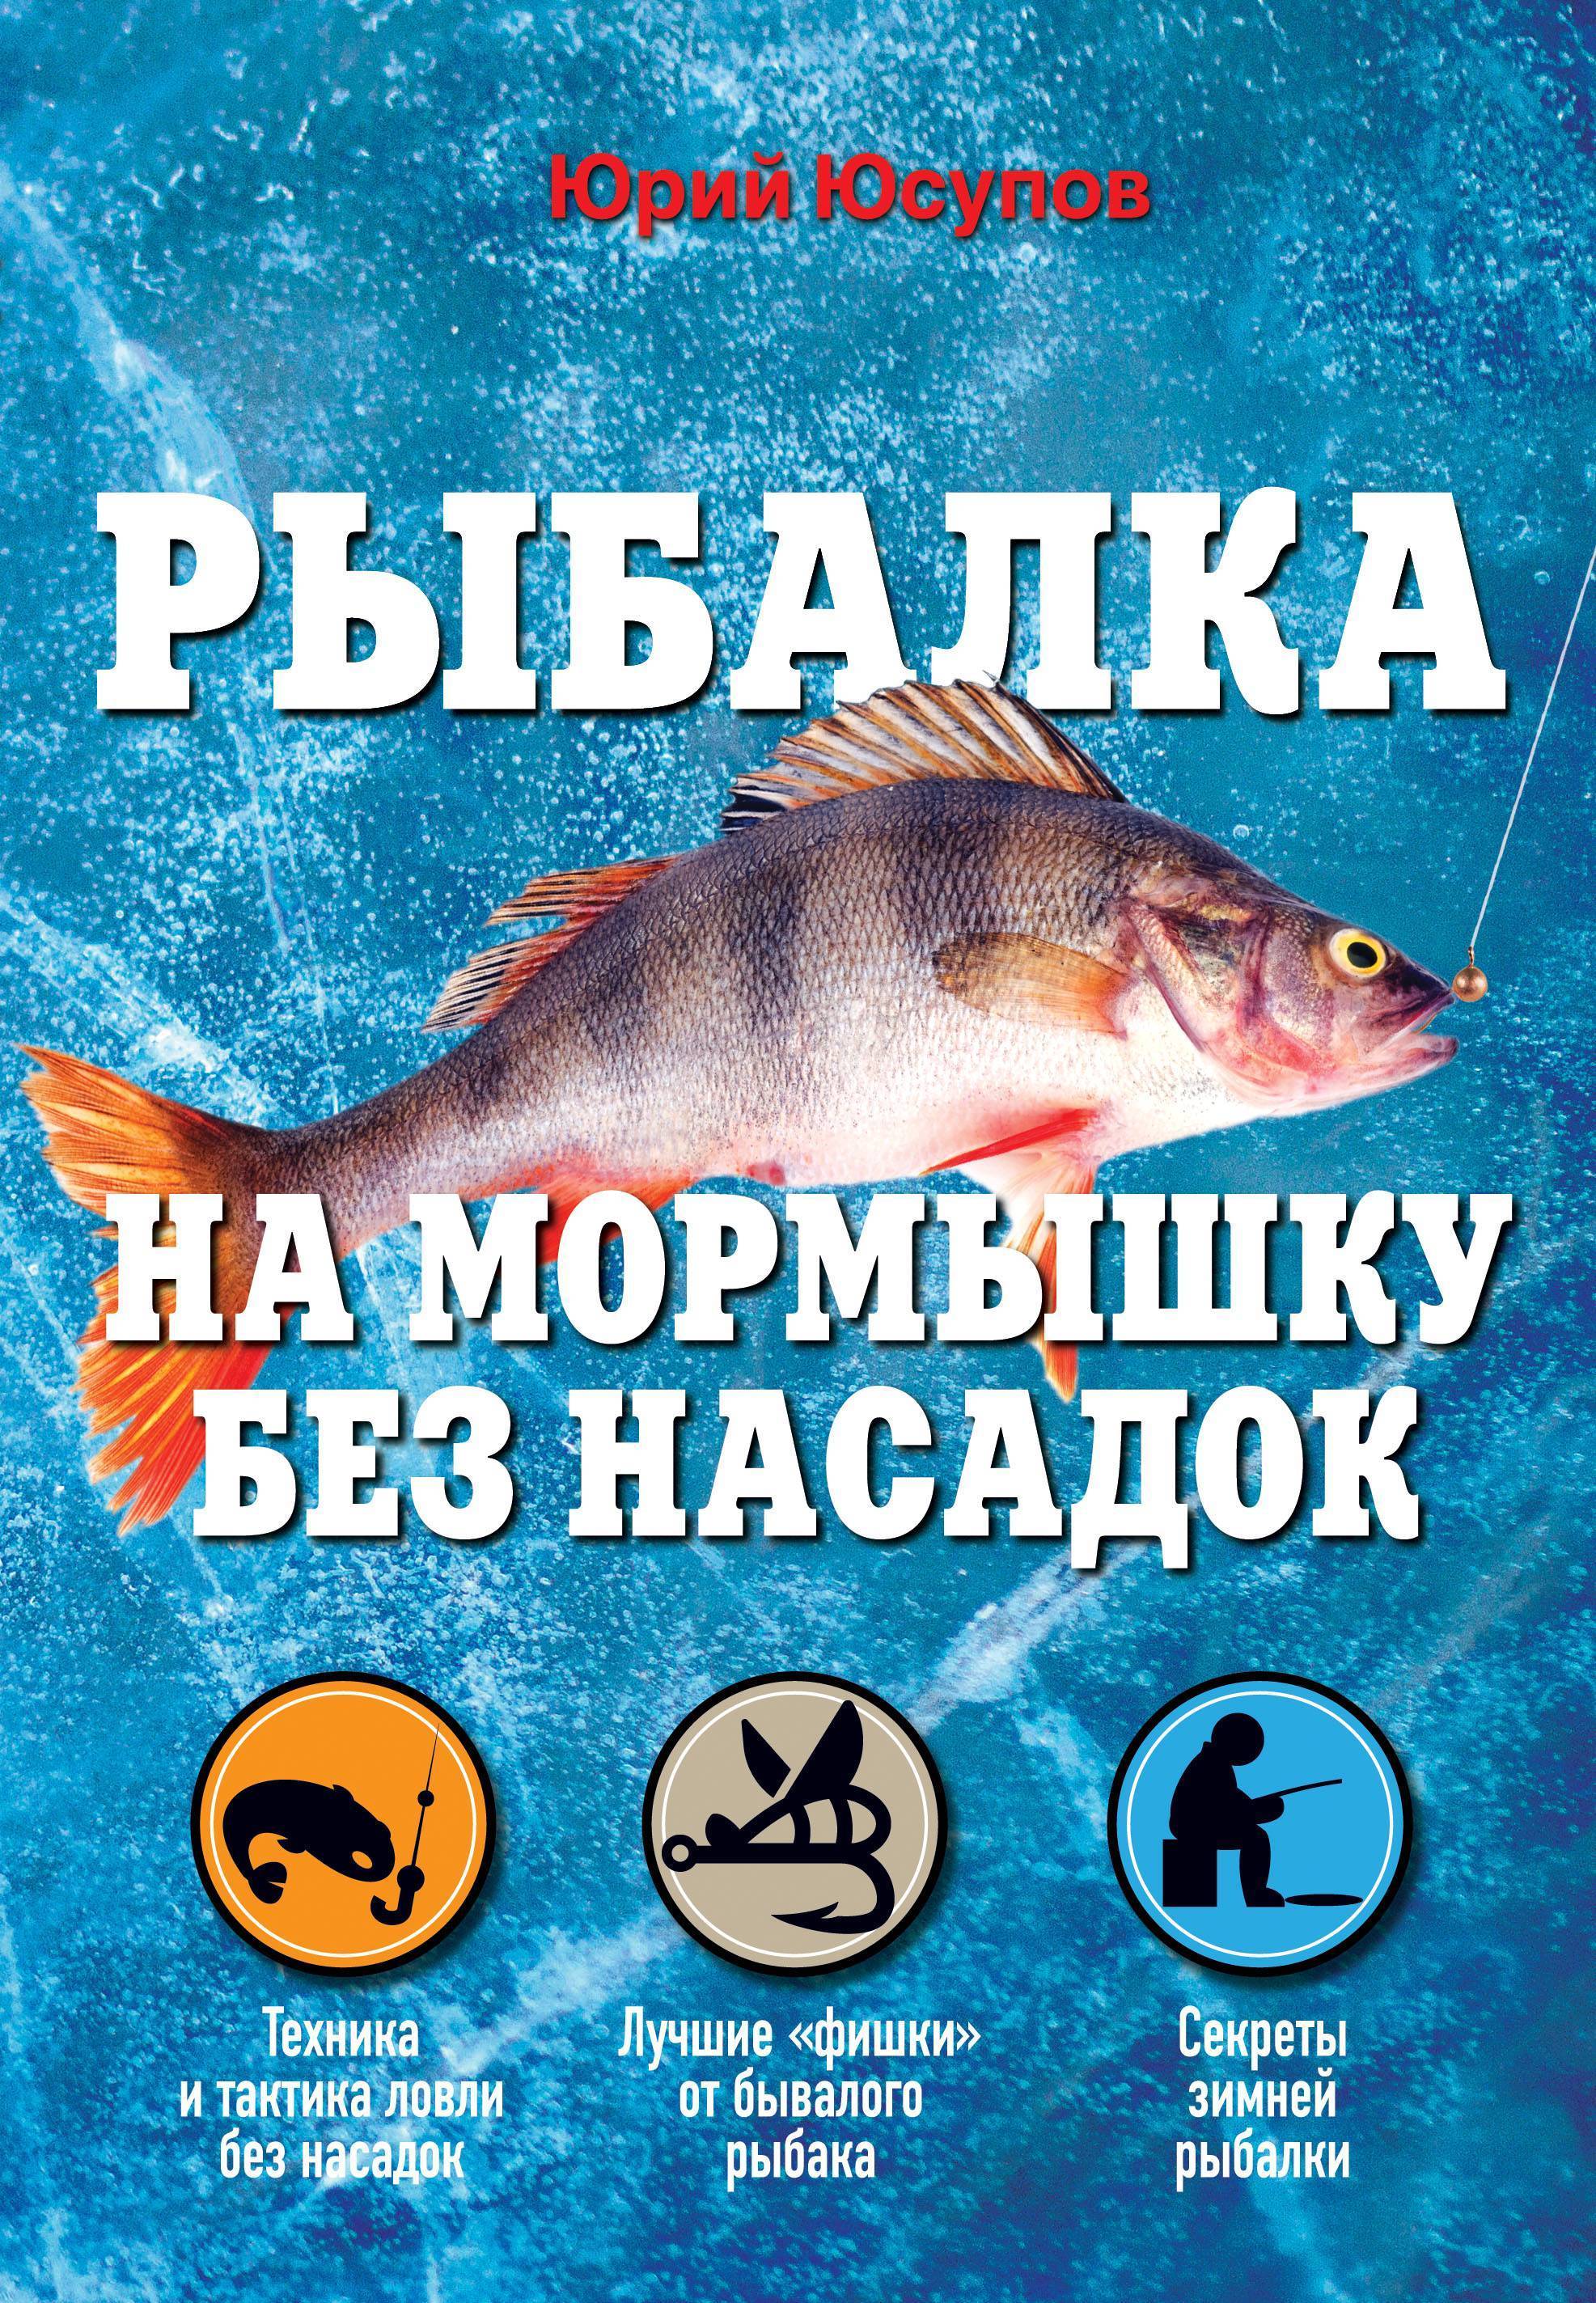 Электронная книга для начинающих рыболовов